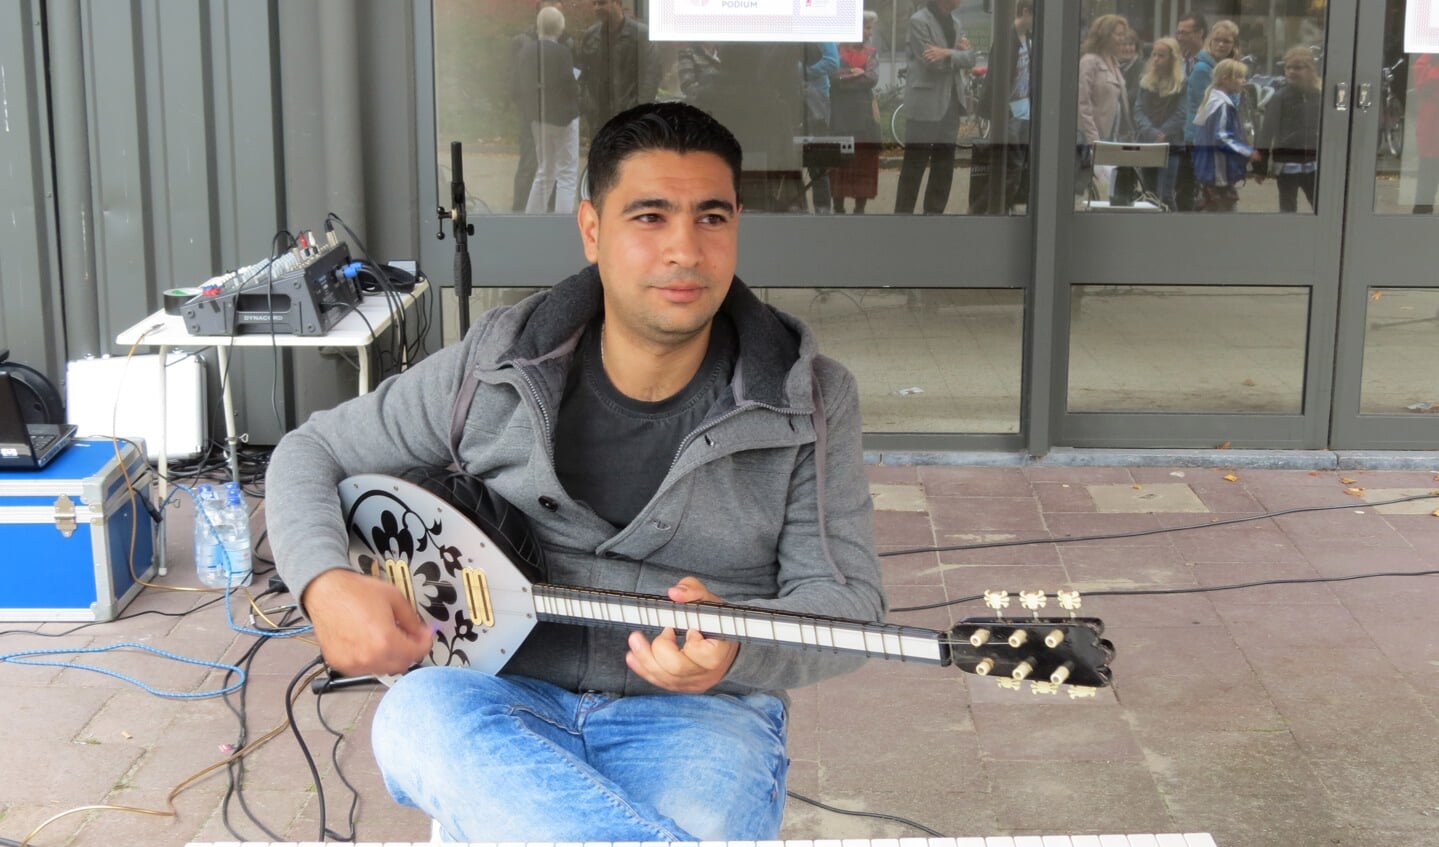 De 28-jarige Nasr Mohamed Ali speelt klassieke Arabische muziek op een  traditioneel snaarinstrument. Nasr is een Syrische vluchteling van Koerdische afkomst en woont twee jaar in Nederland.